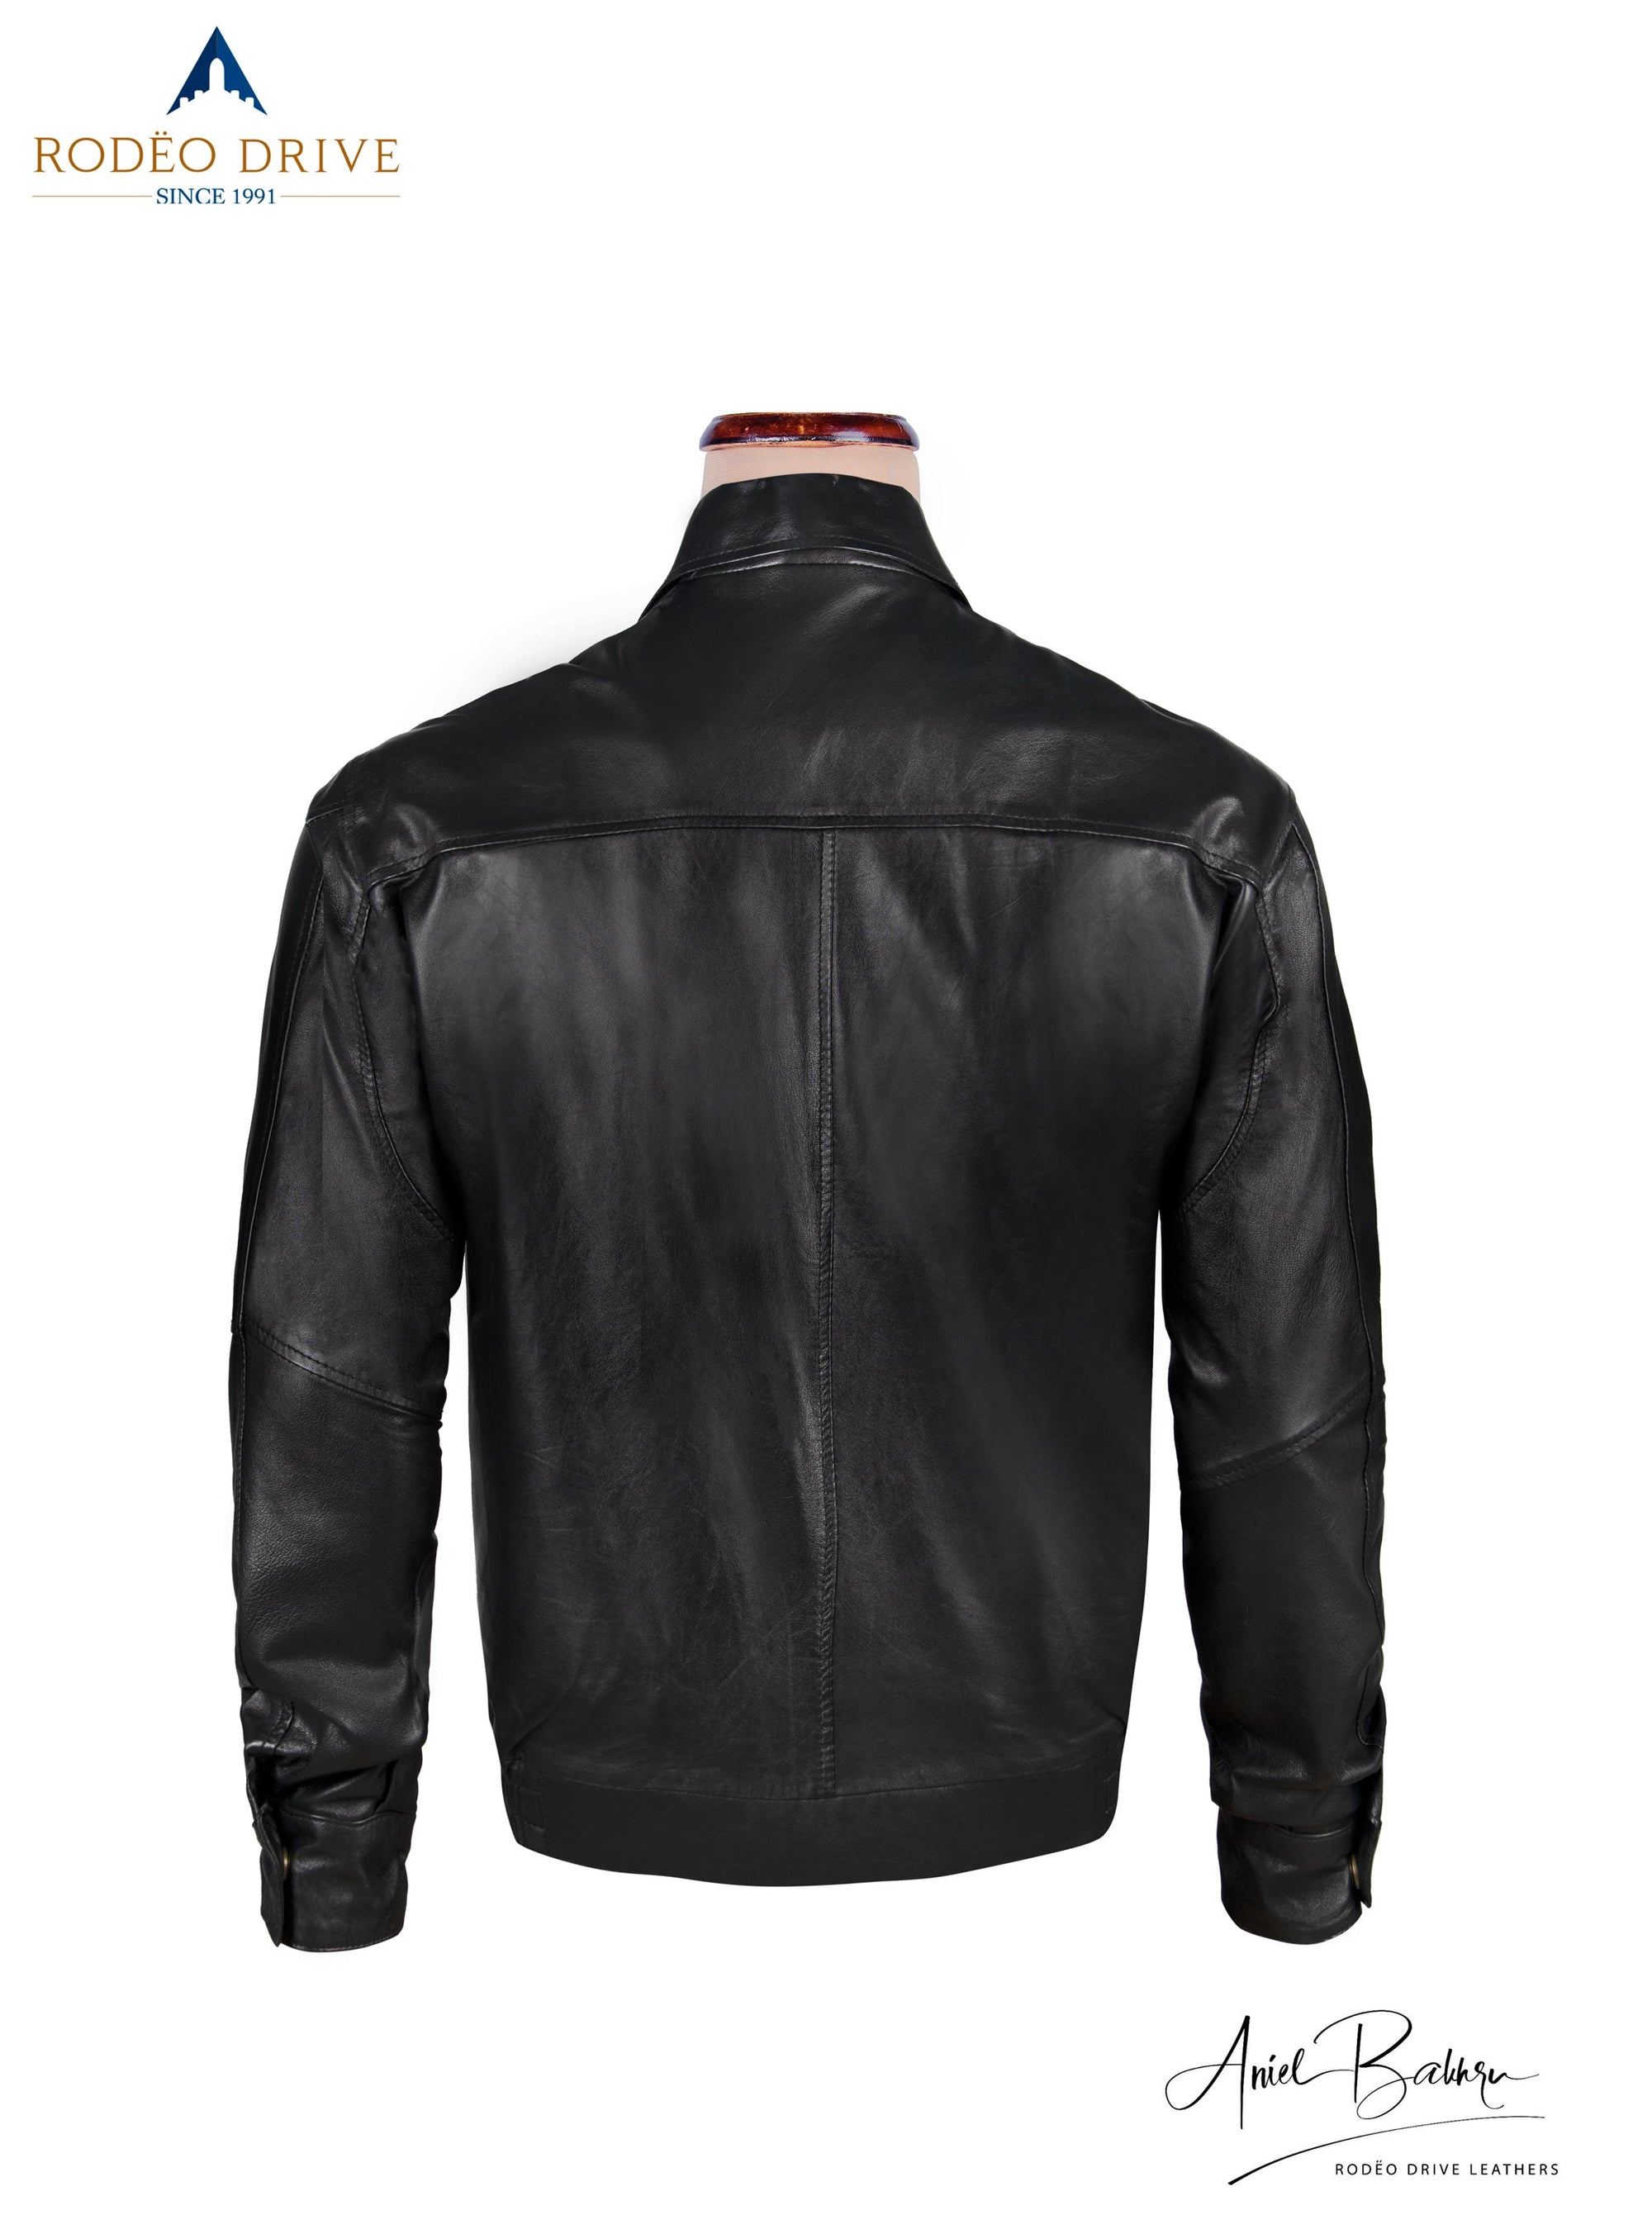 back side image of Bomber jacket. Black and elegant.